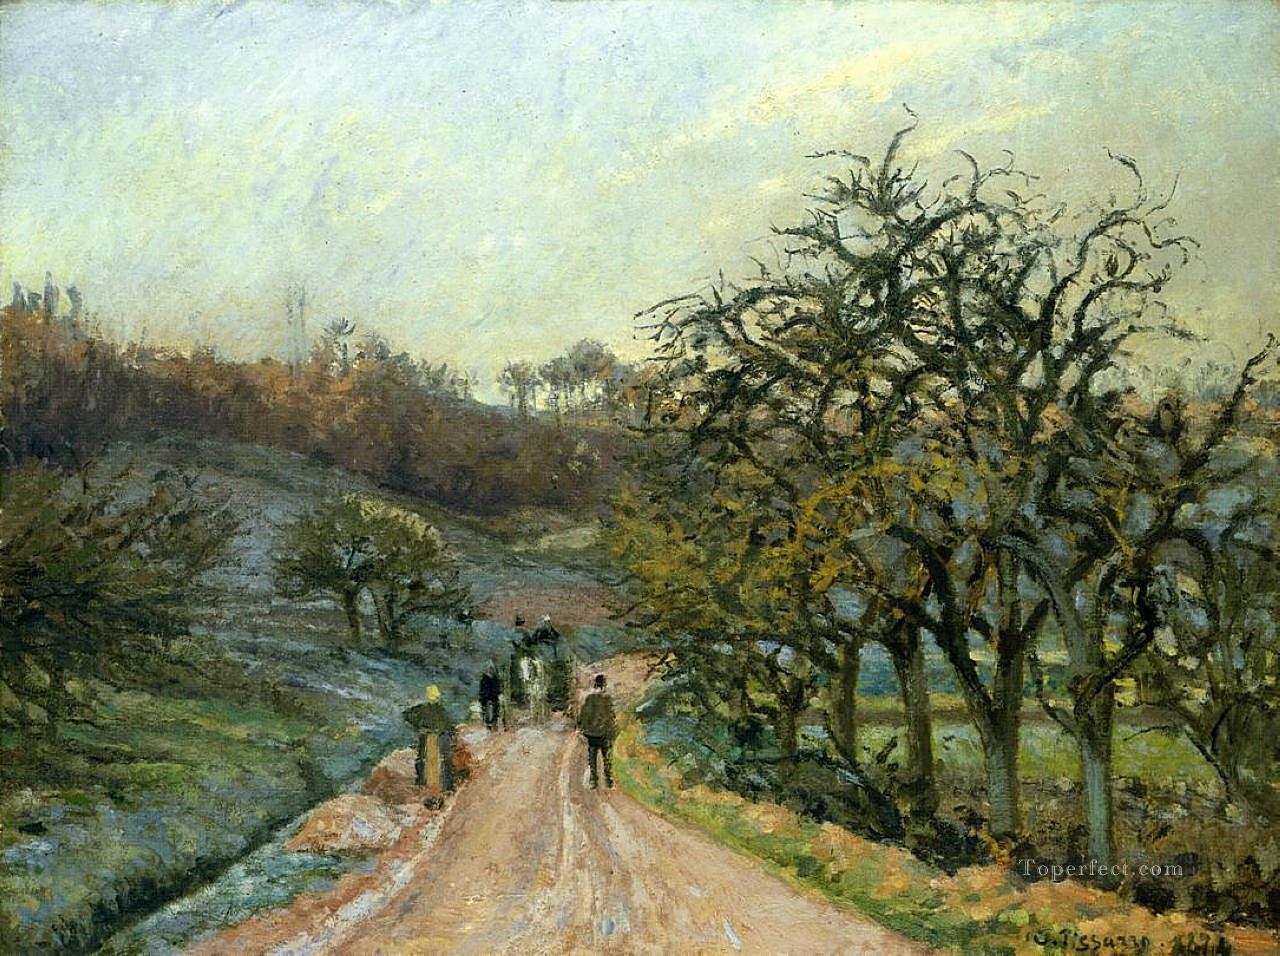 オスニー・ポントワーズ近くのリンゴの木の路地 1874年 カミーユ・ピサロ油絵